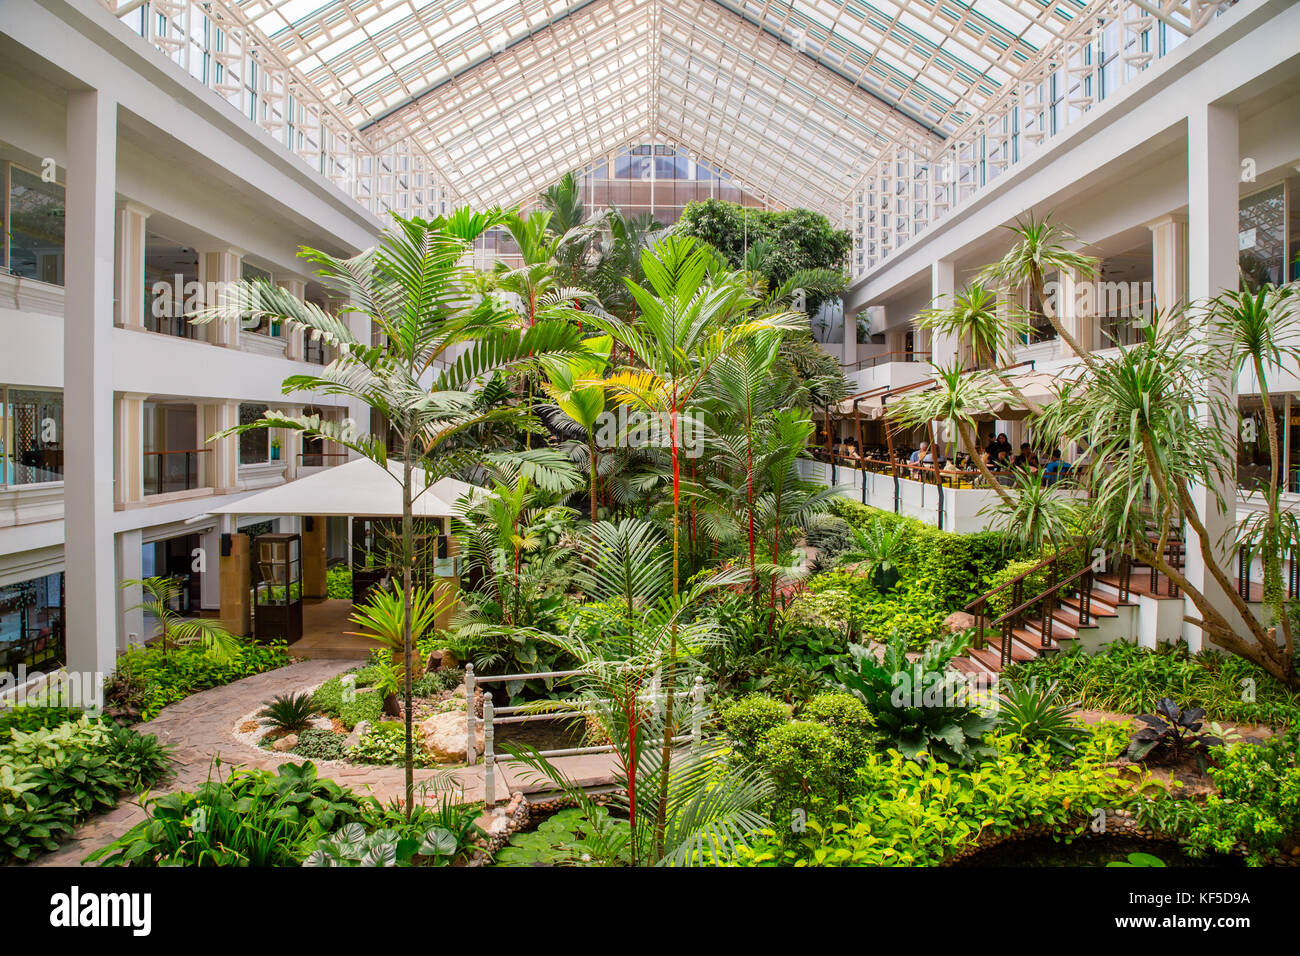 Jardin tropical intérieur de l'hôtel Dusit Thani hotel de luxe à Pattaya, Thaïlande Banque D'Images